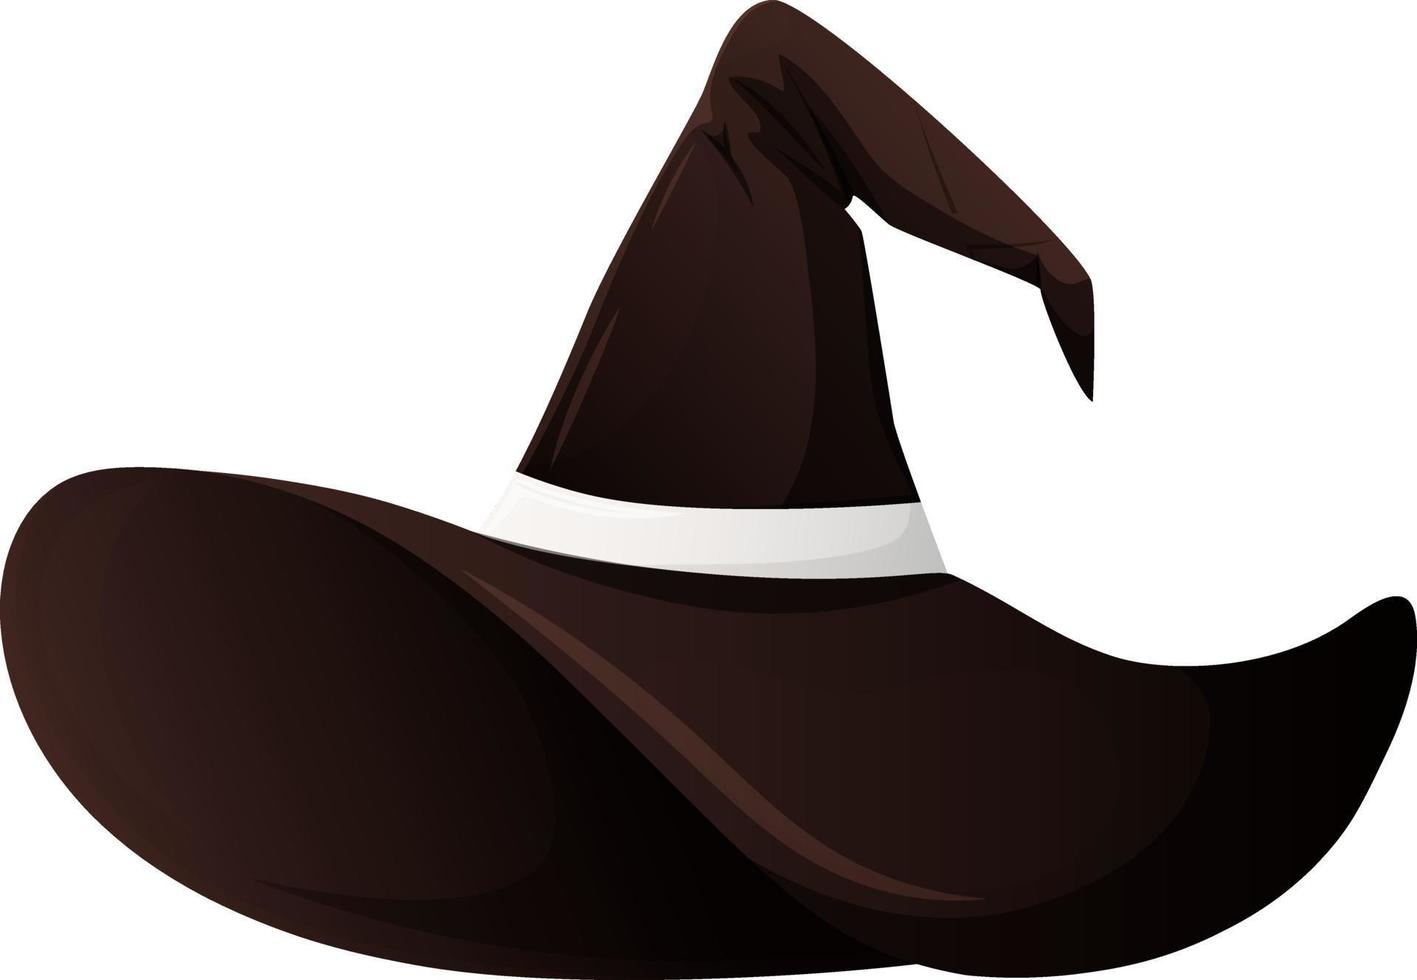 enkel svart och vit hatt av häxa, trollkarl, trollkarl isolerat vektor